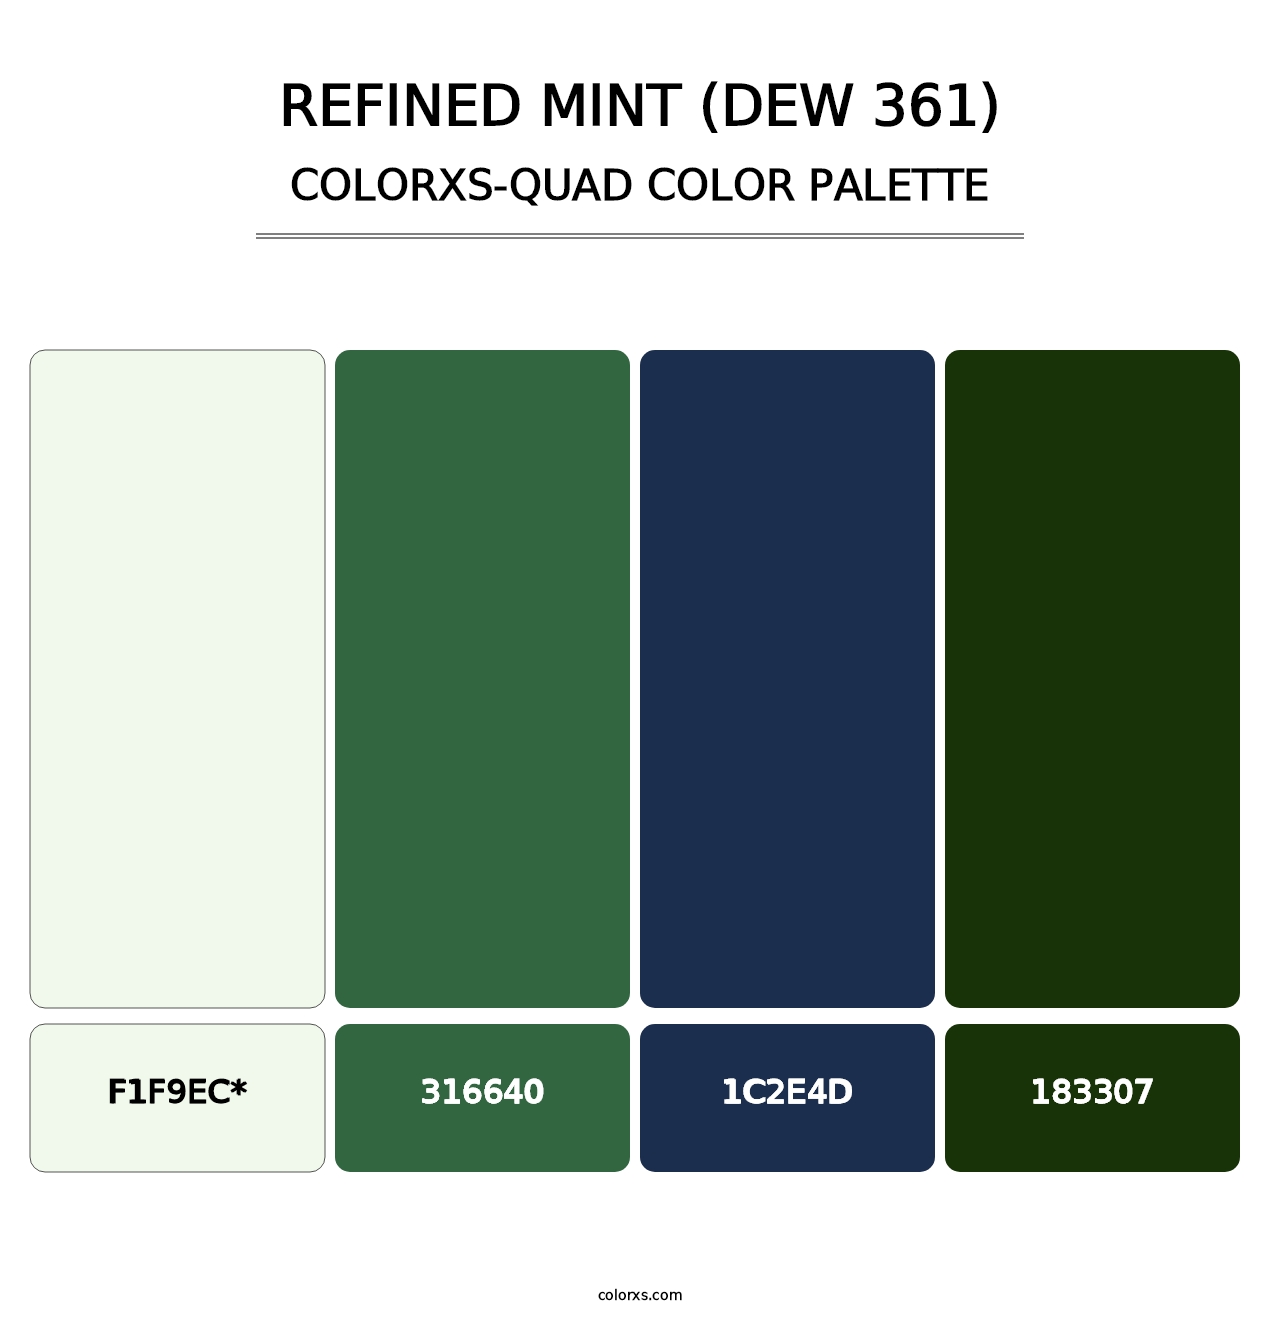 Refined Mint (DEW 361) - Colorxs Quad Palette